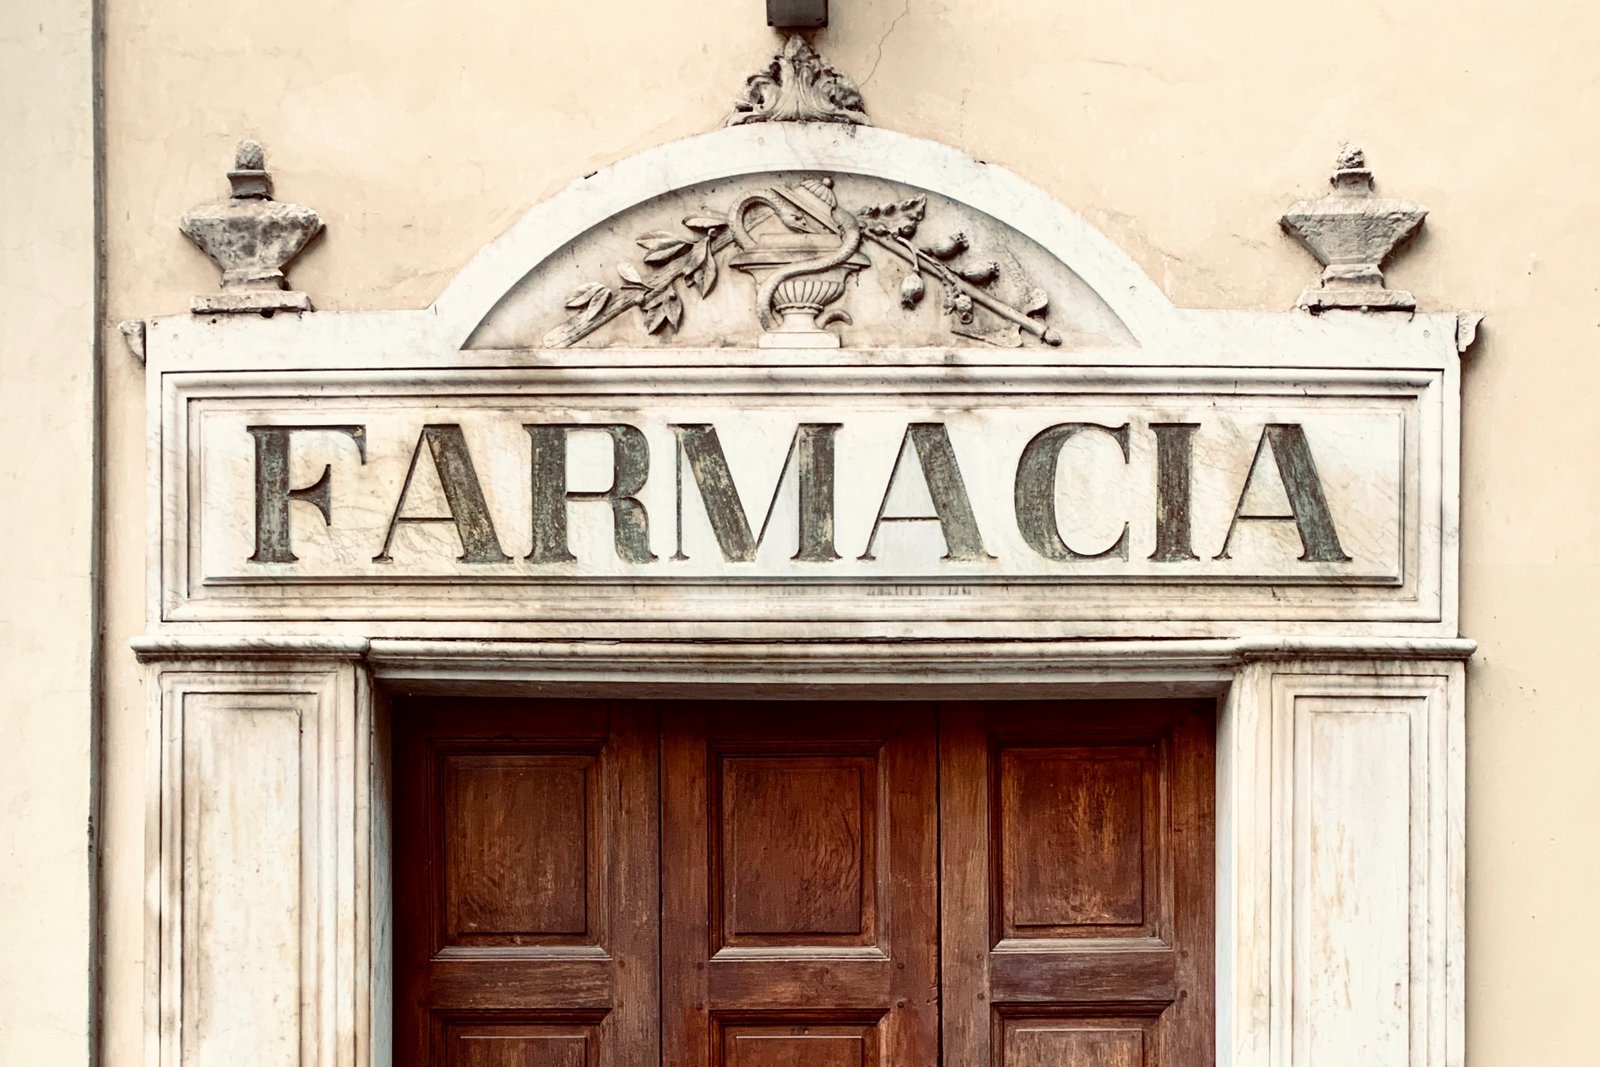 Imagen simbólica Farmacia italiana